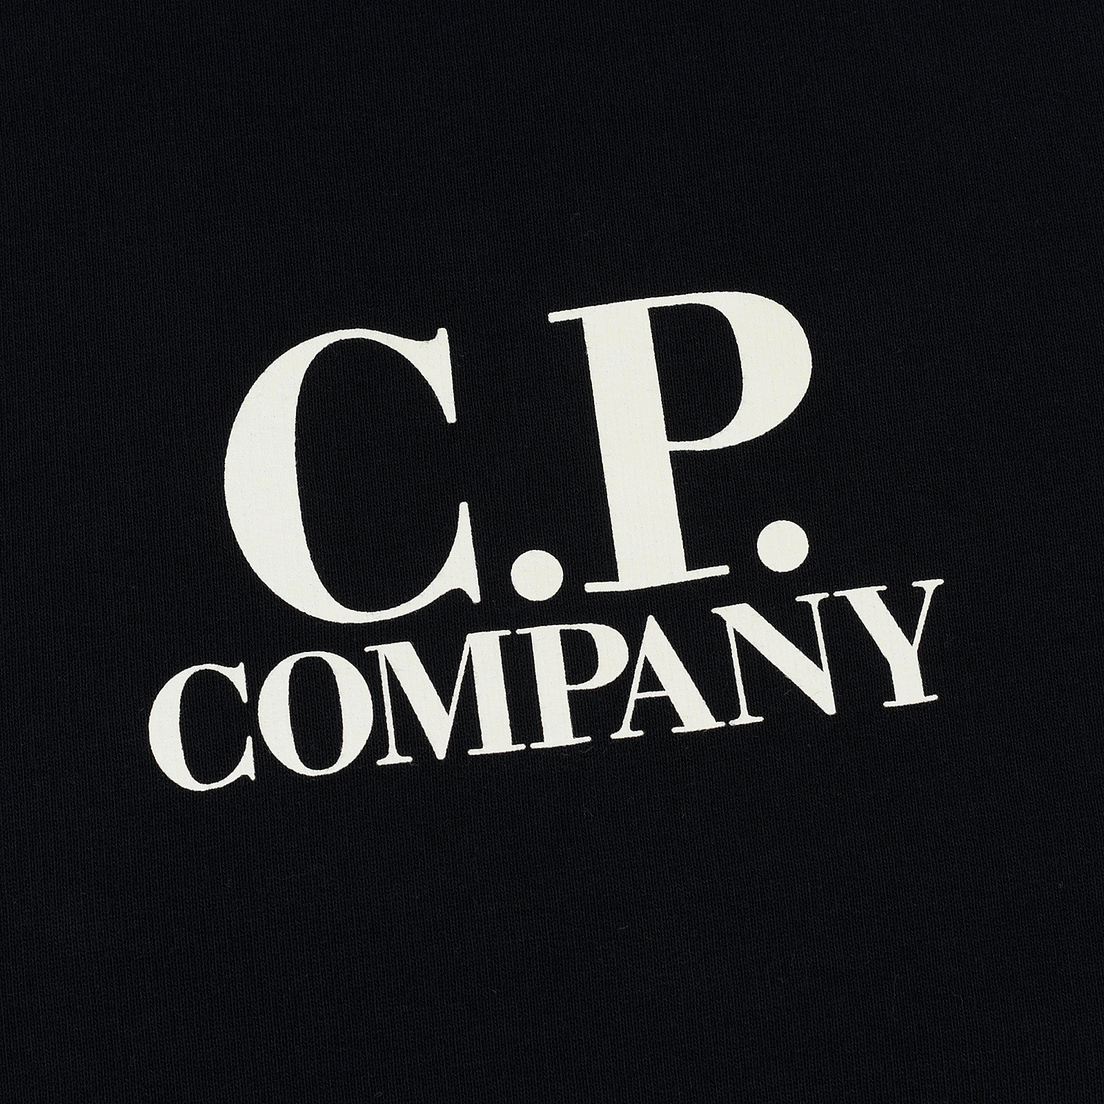 C.P. Company U16 Детская толстовка Crew Neck Fleece Front Logo Lens